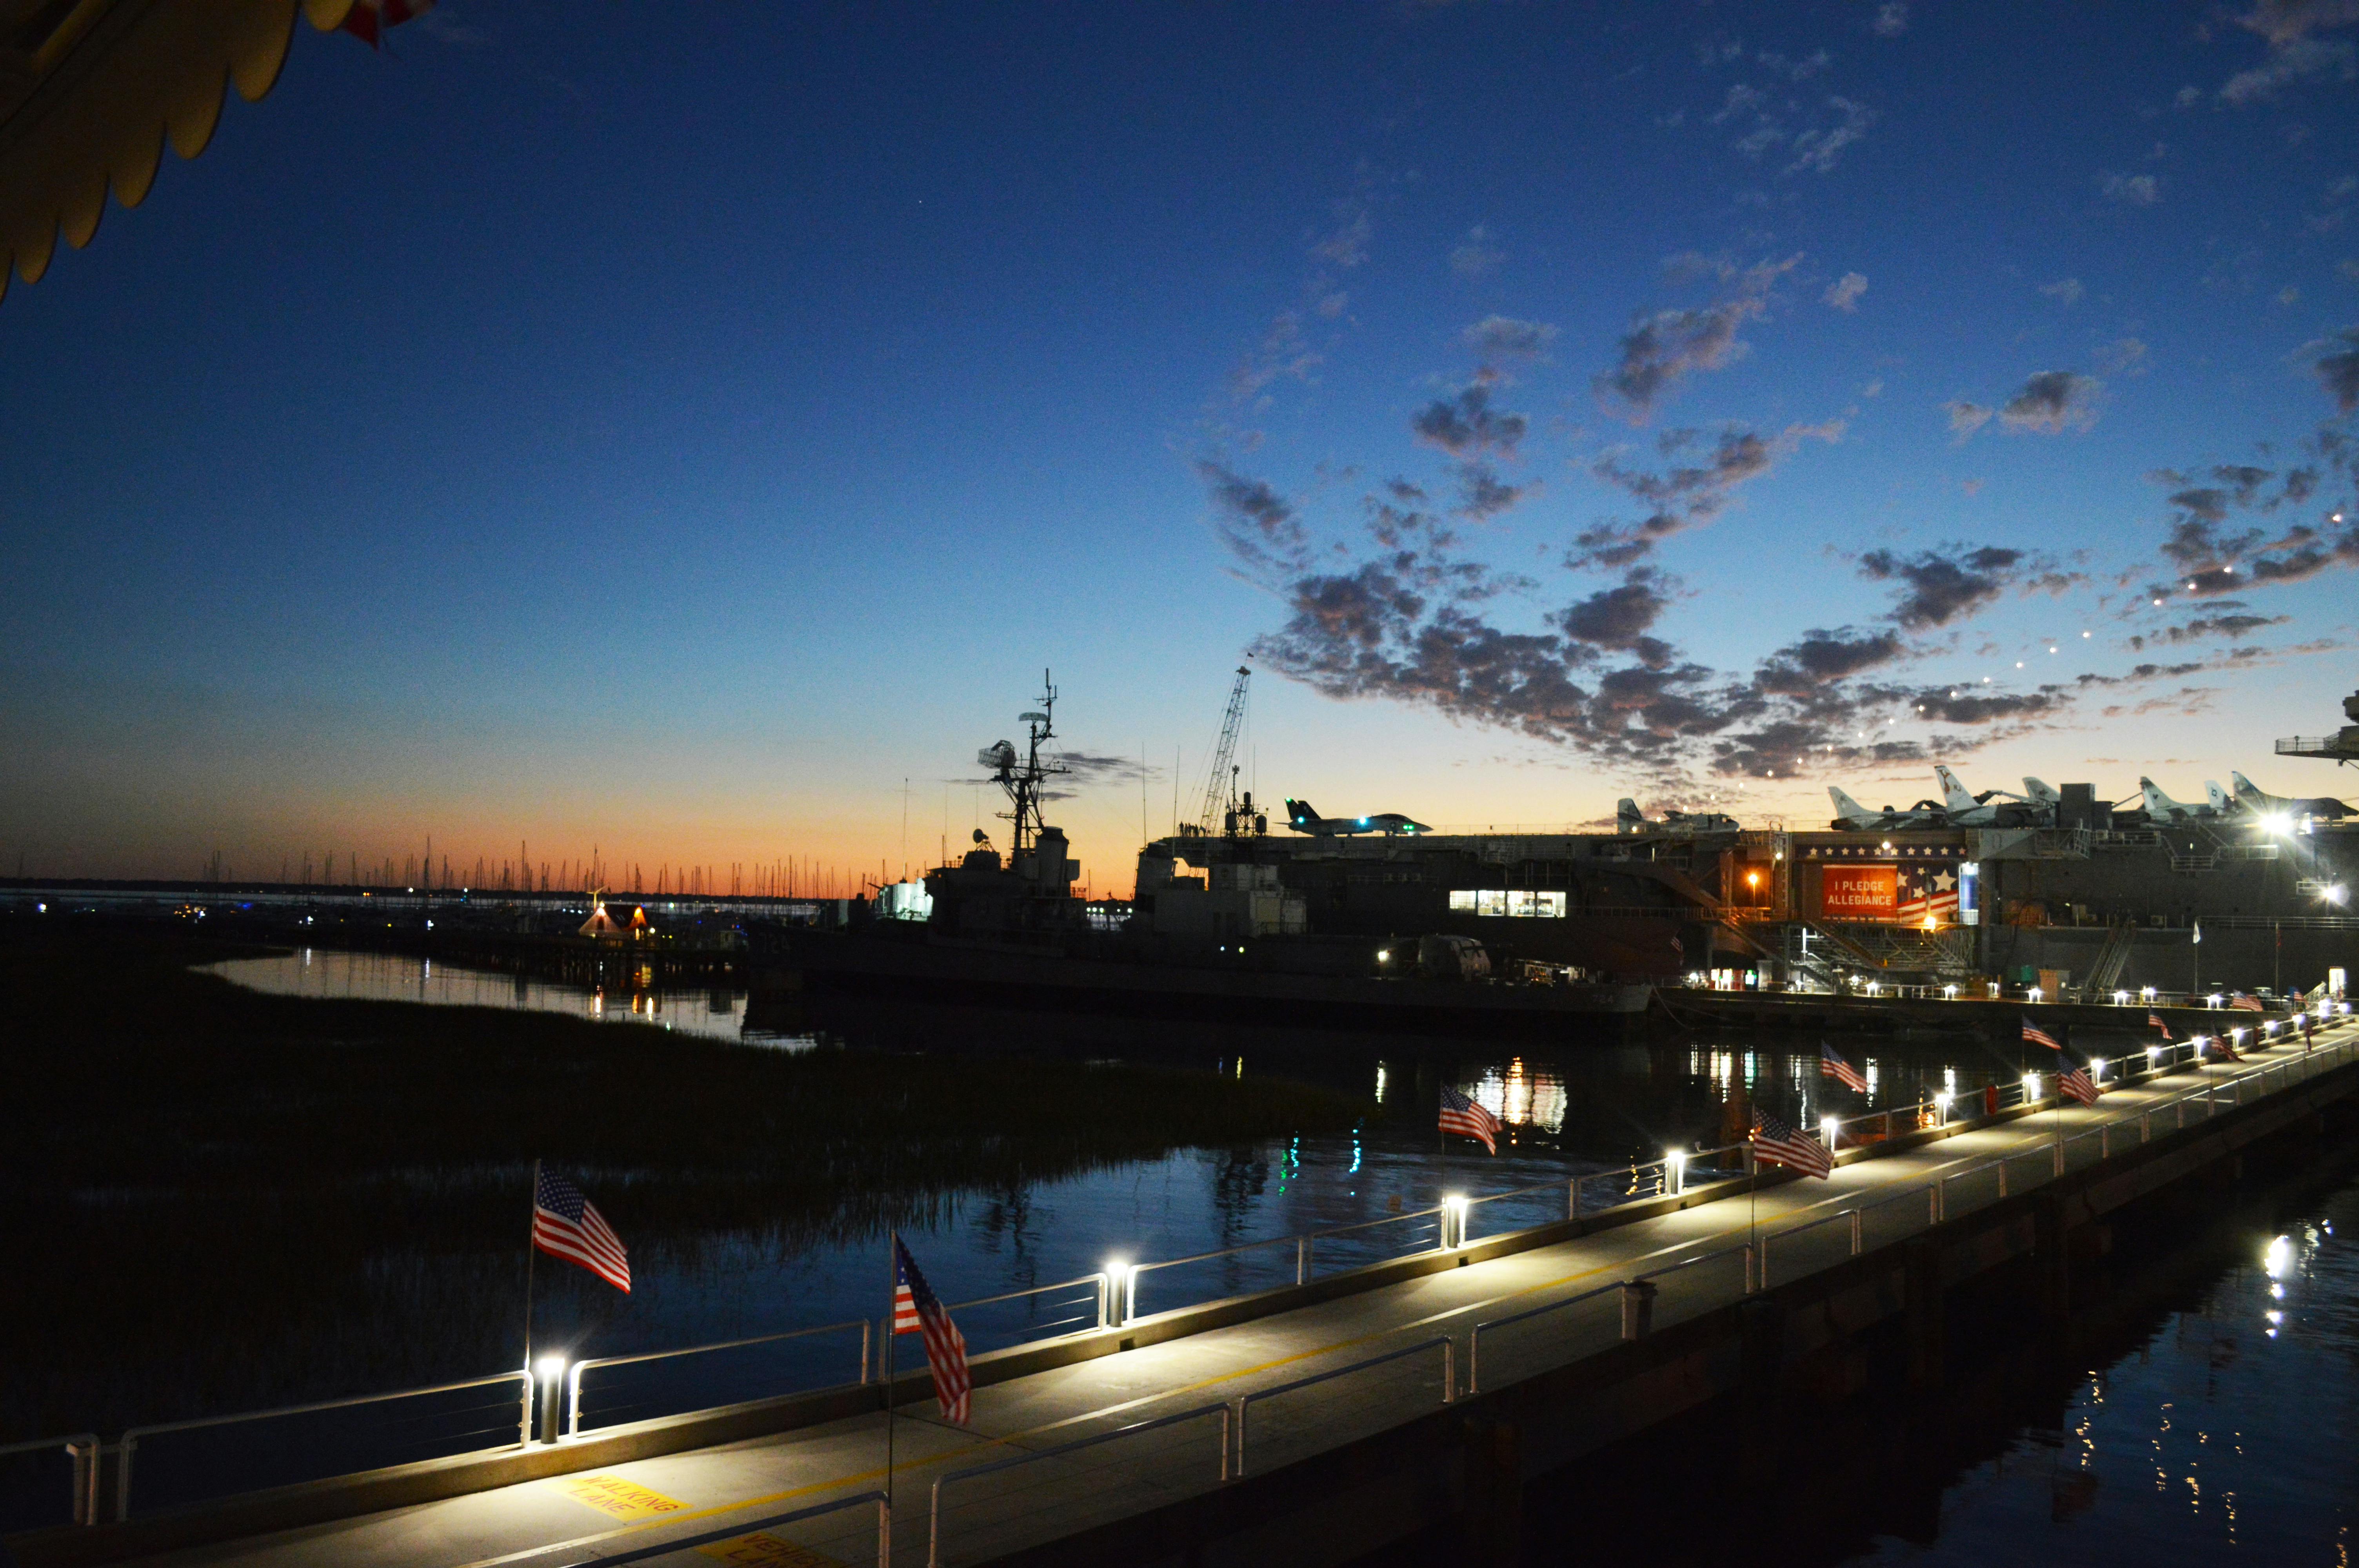 Free stock photo of Charleston, USS YORKTOWN (CV-10)